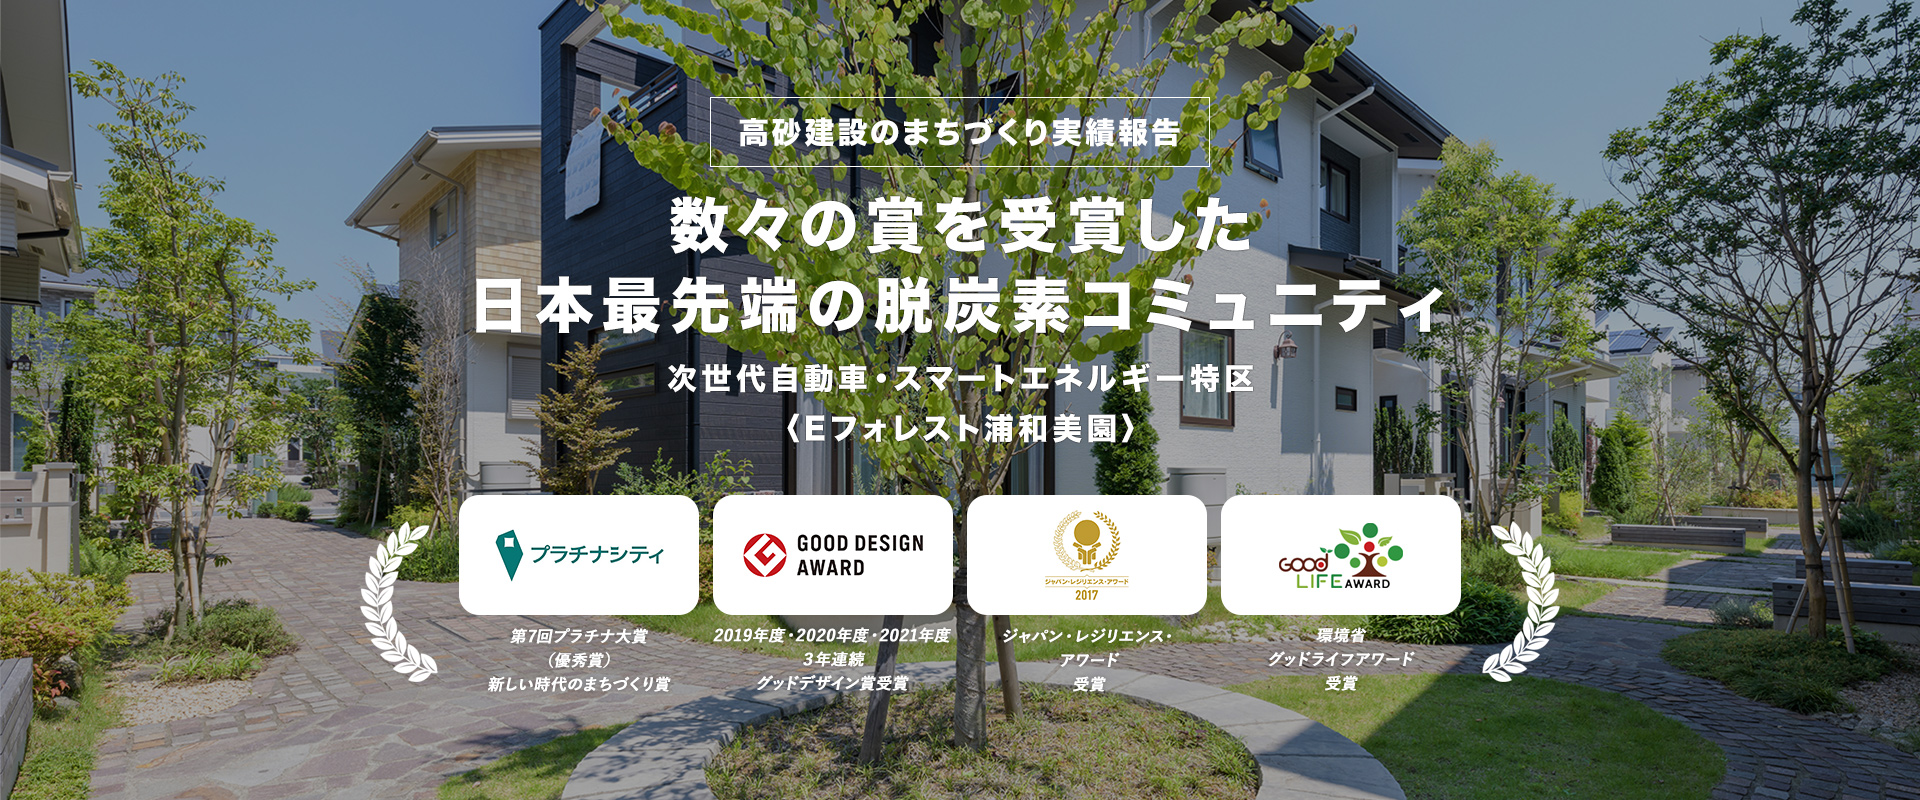 高砂建設のまちづくち実績報告 数々の賞を受賞した日本最先端の脱炭素コミュニティ 次世代自動車・スマートエネルギー特区 〈Eフォレスト浦和美園〉